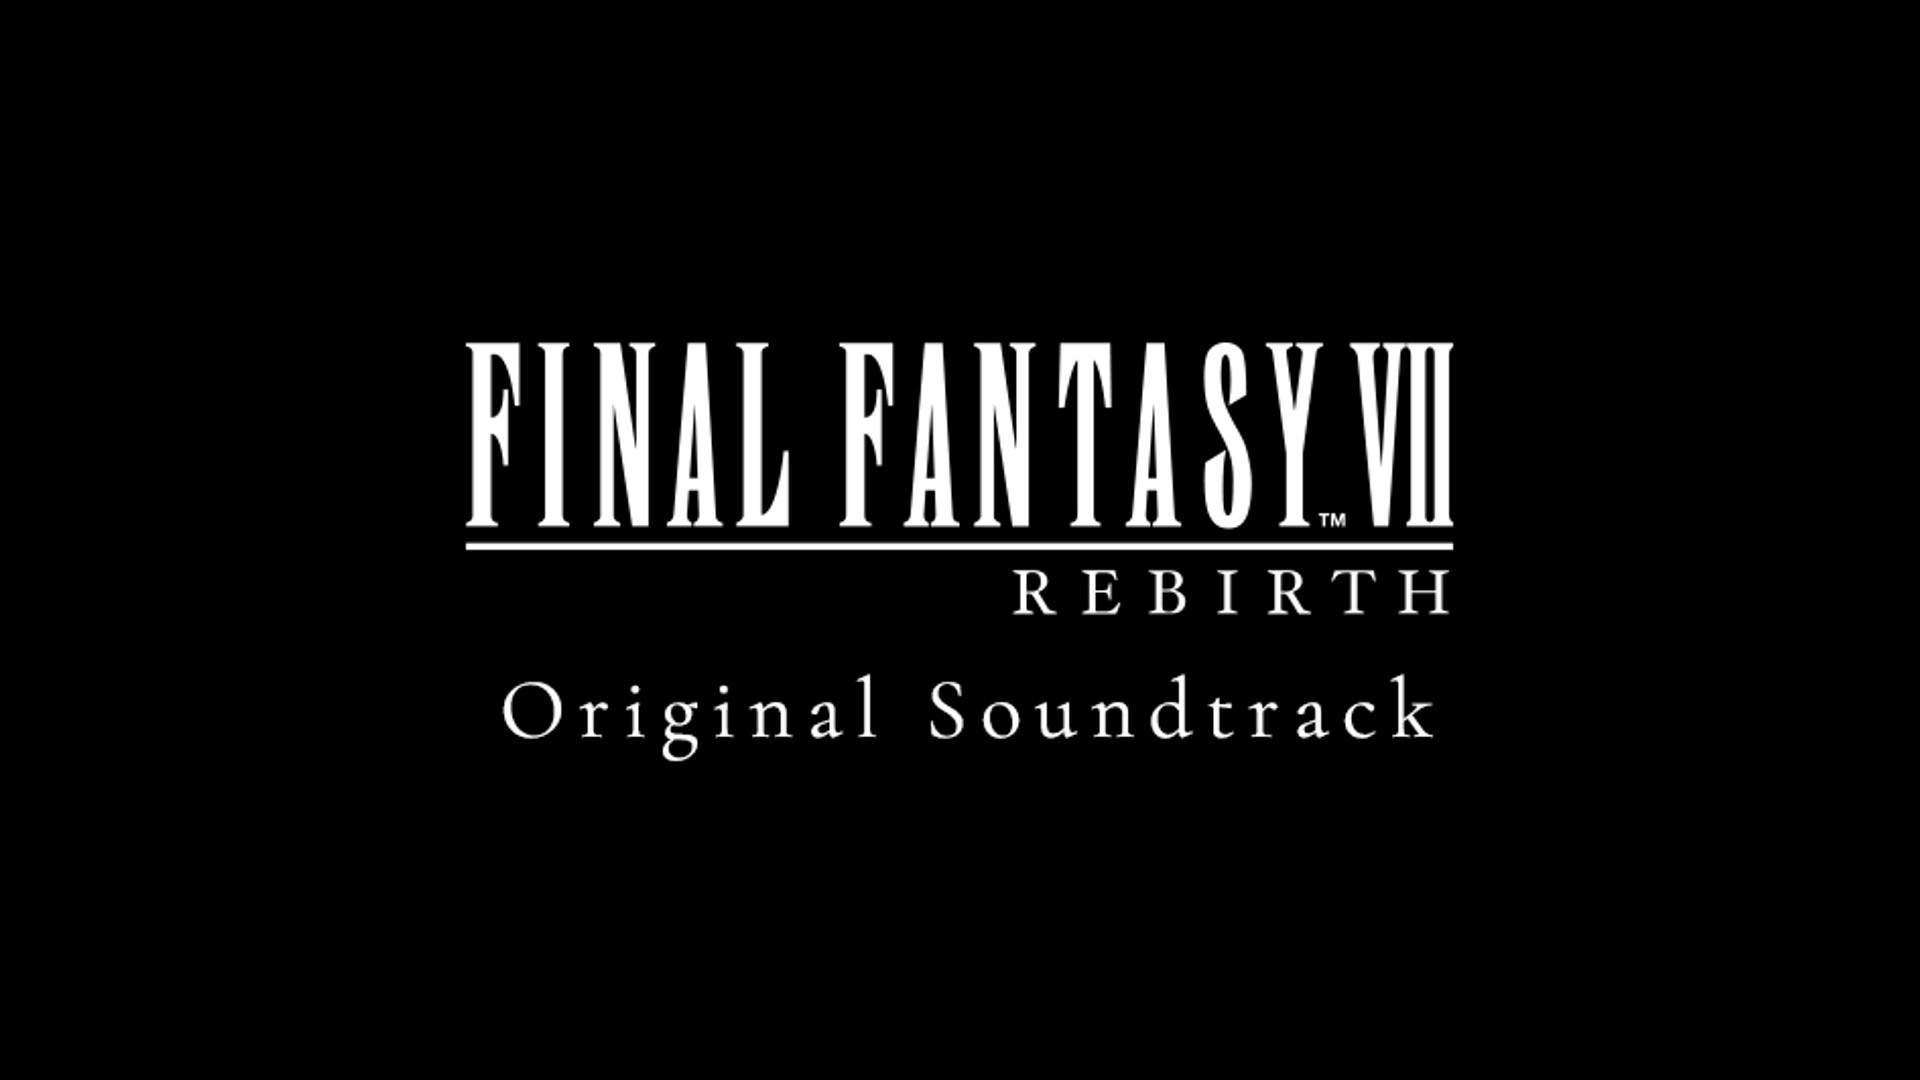 Un fond de couleur noire, avec le logo de FINAL FANTASY VII REBIRTH et le texte Original Soundtrack.